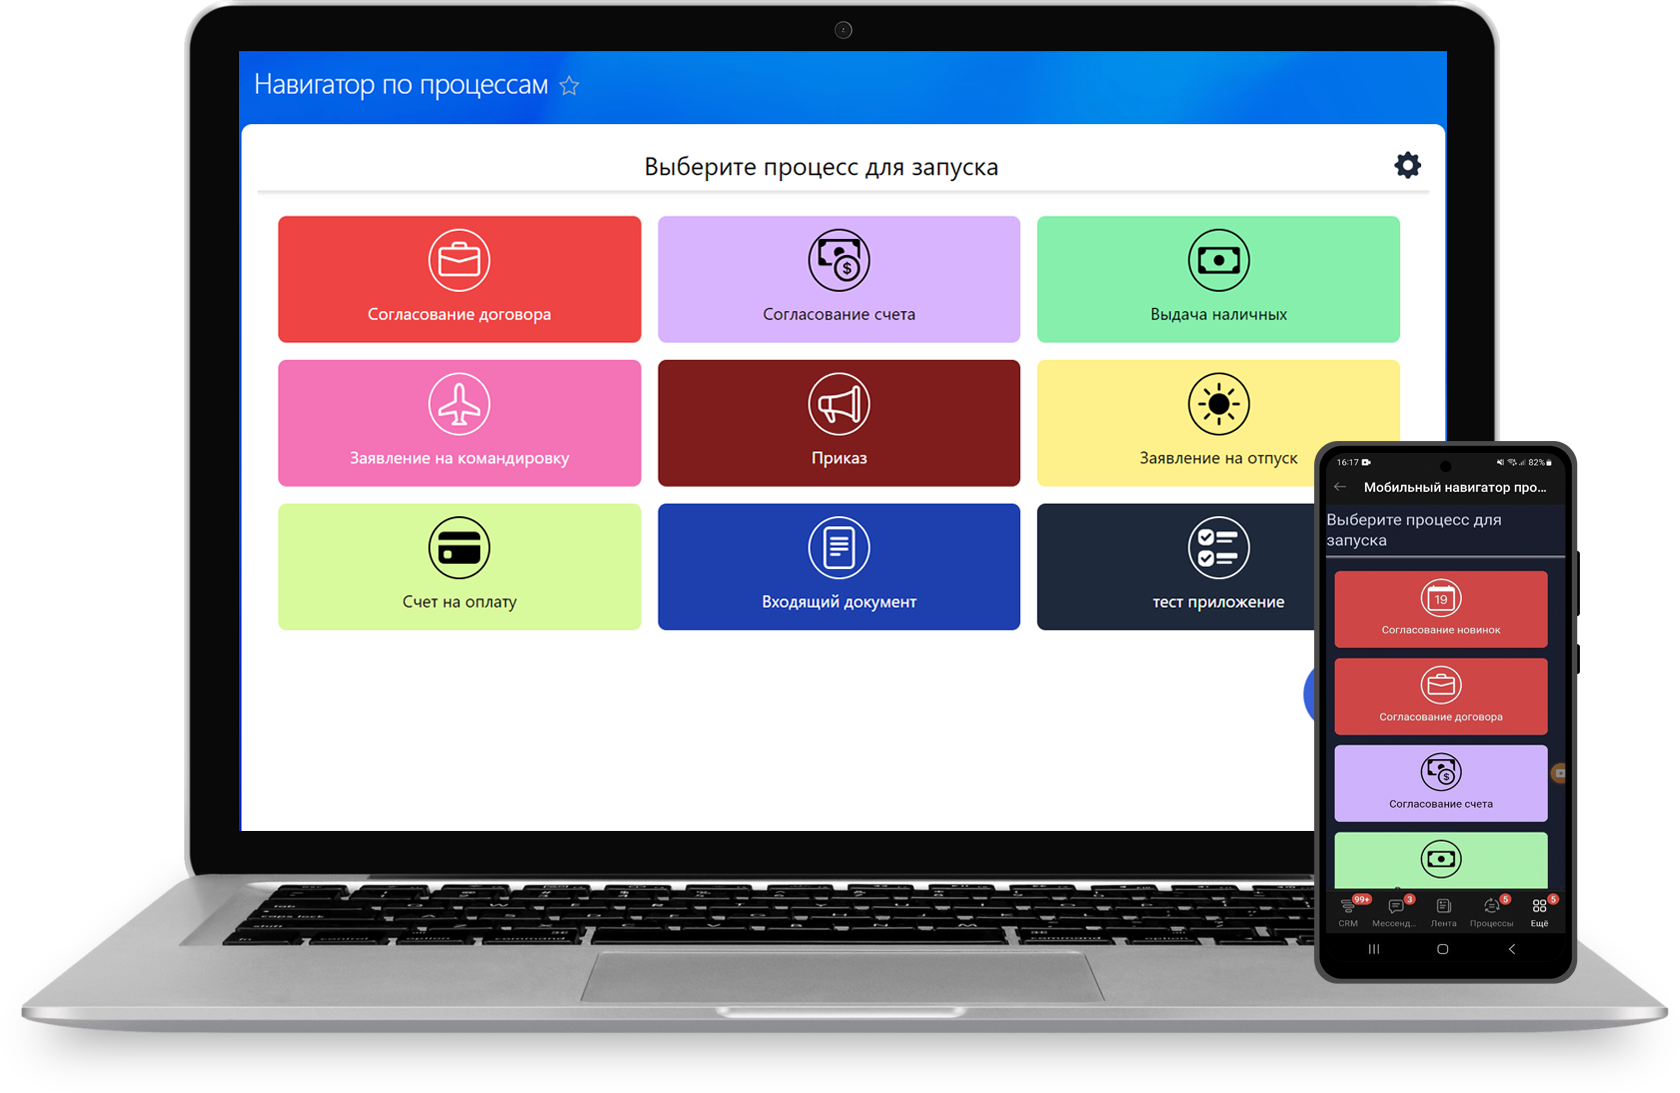 Мобильный навигатор процессов приложение для битрикс24 запуск и настройка бизнес-процессов компании